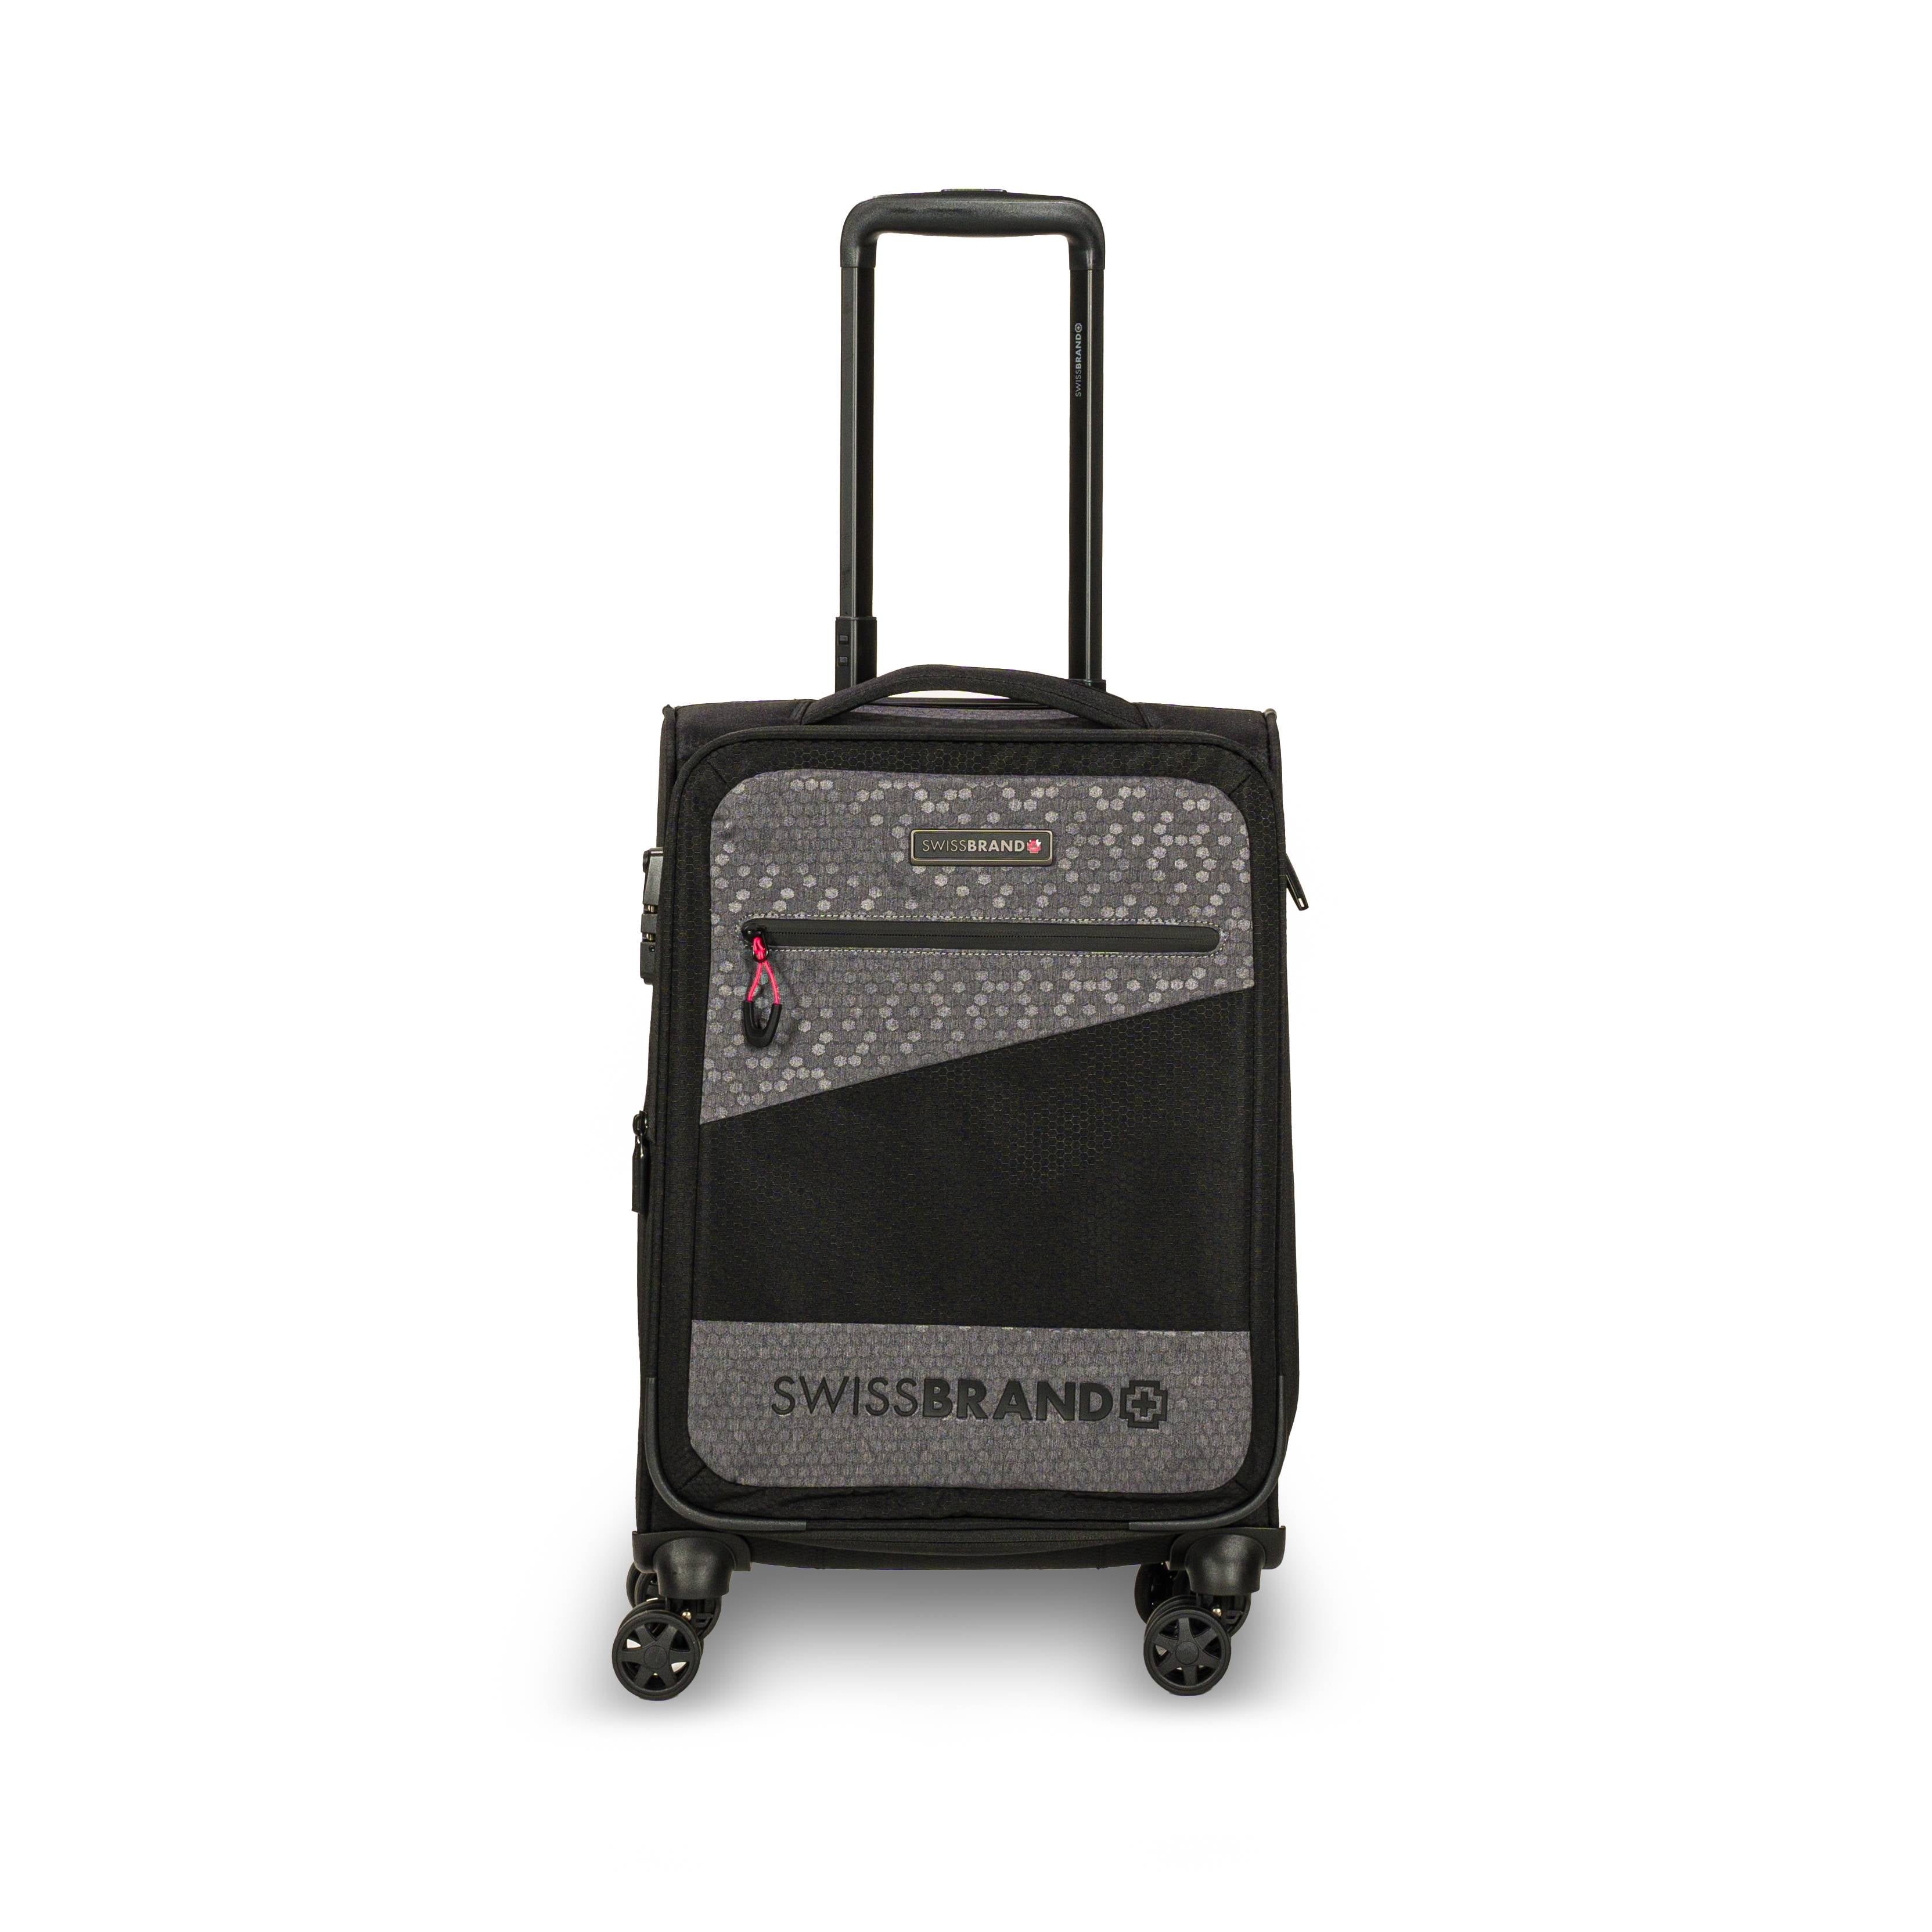 ✮מותג שוויצרי מקורי✮ מזוודה גדולה 28" בד סופר חזק ריפסטופ (בד מצנחים) קלה מבית המותג השוויצרי SwissBrand דגם HEXA